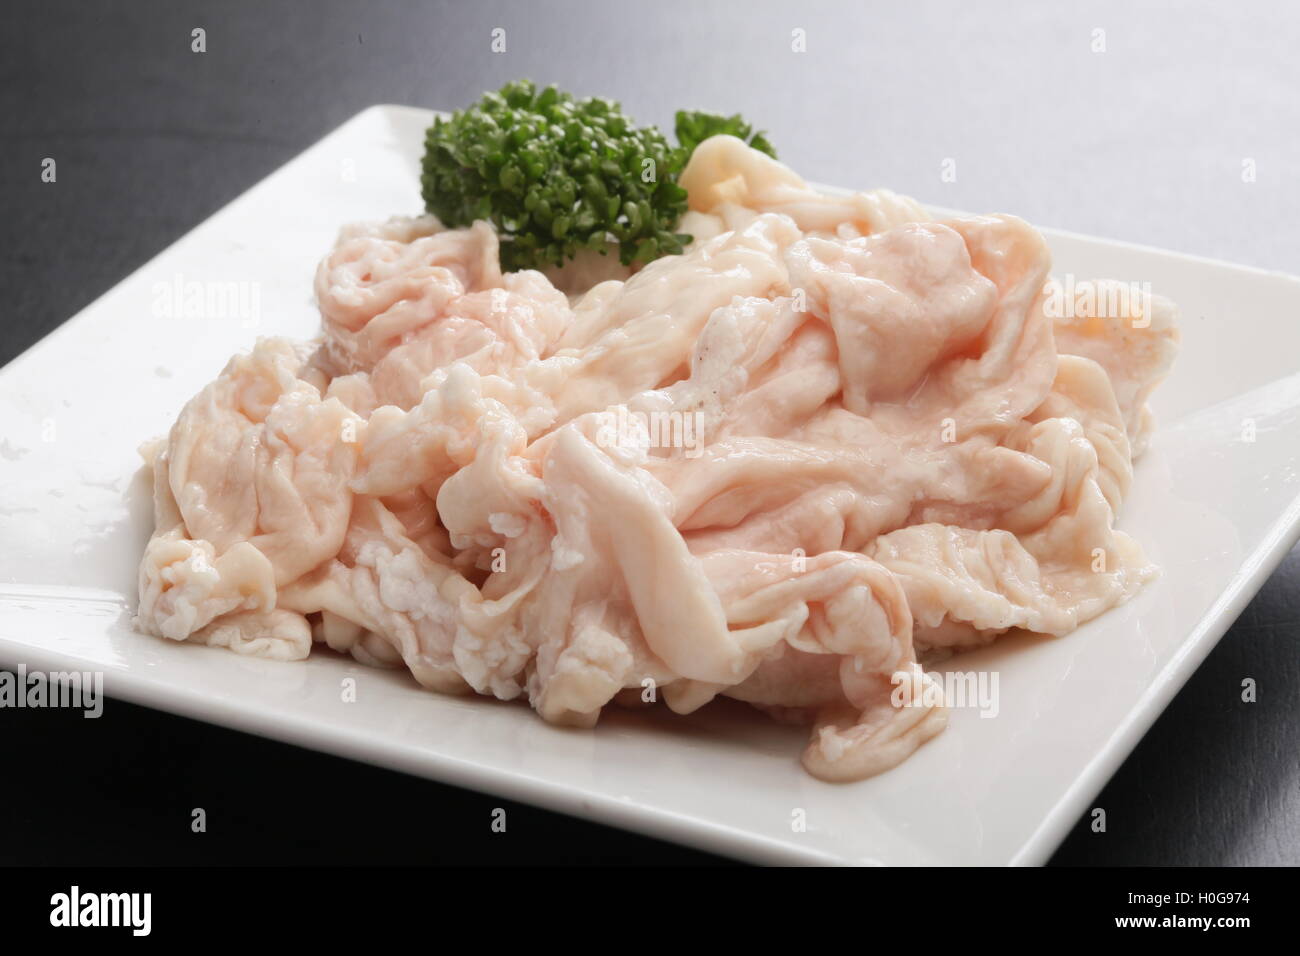 Frisches rohes Schwein Hormon Magen mit Kreuzkümmel Kräuter auf weißem Teller Stockfoto